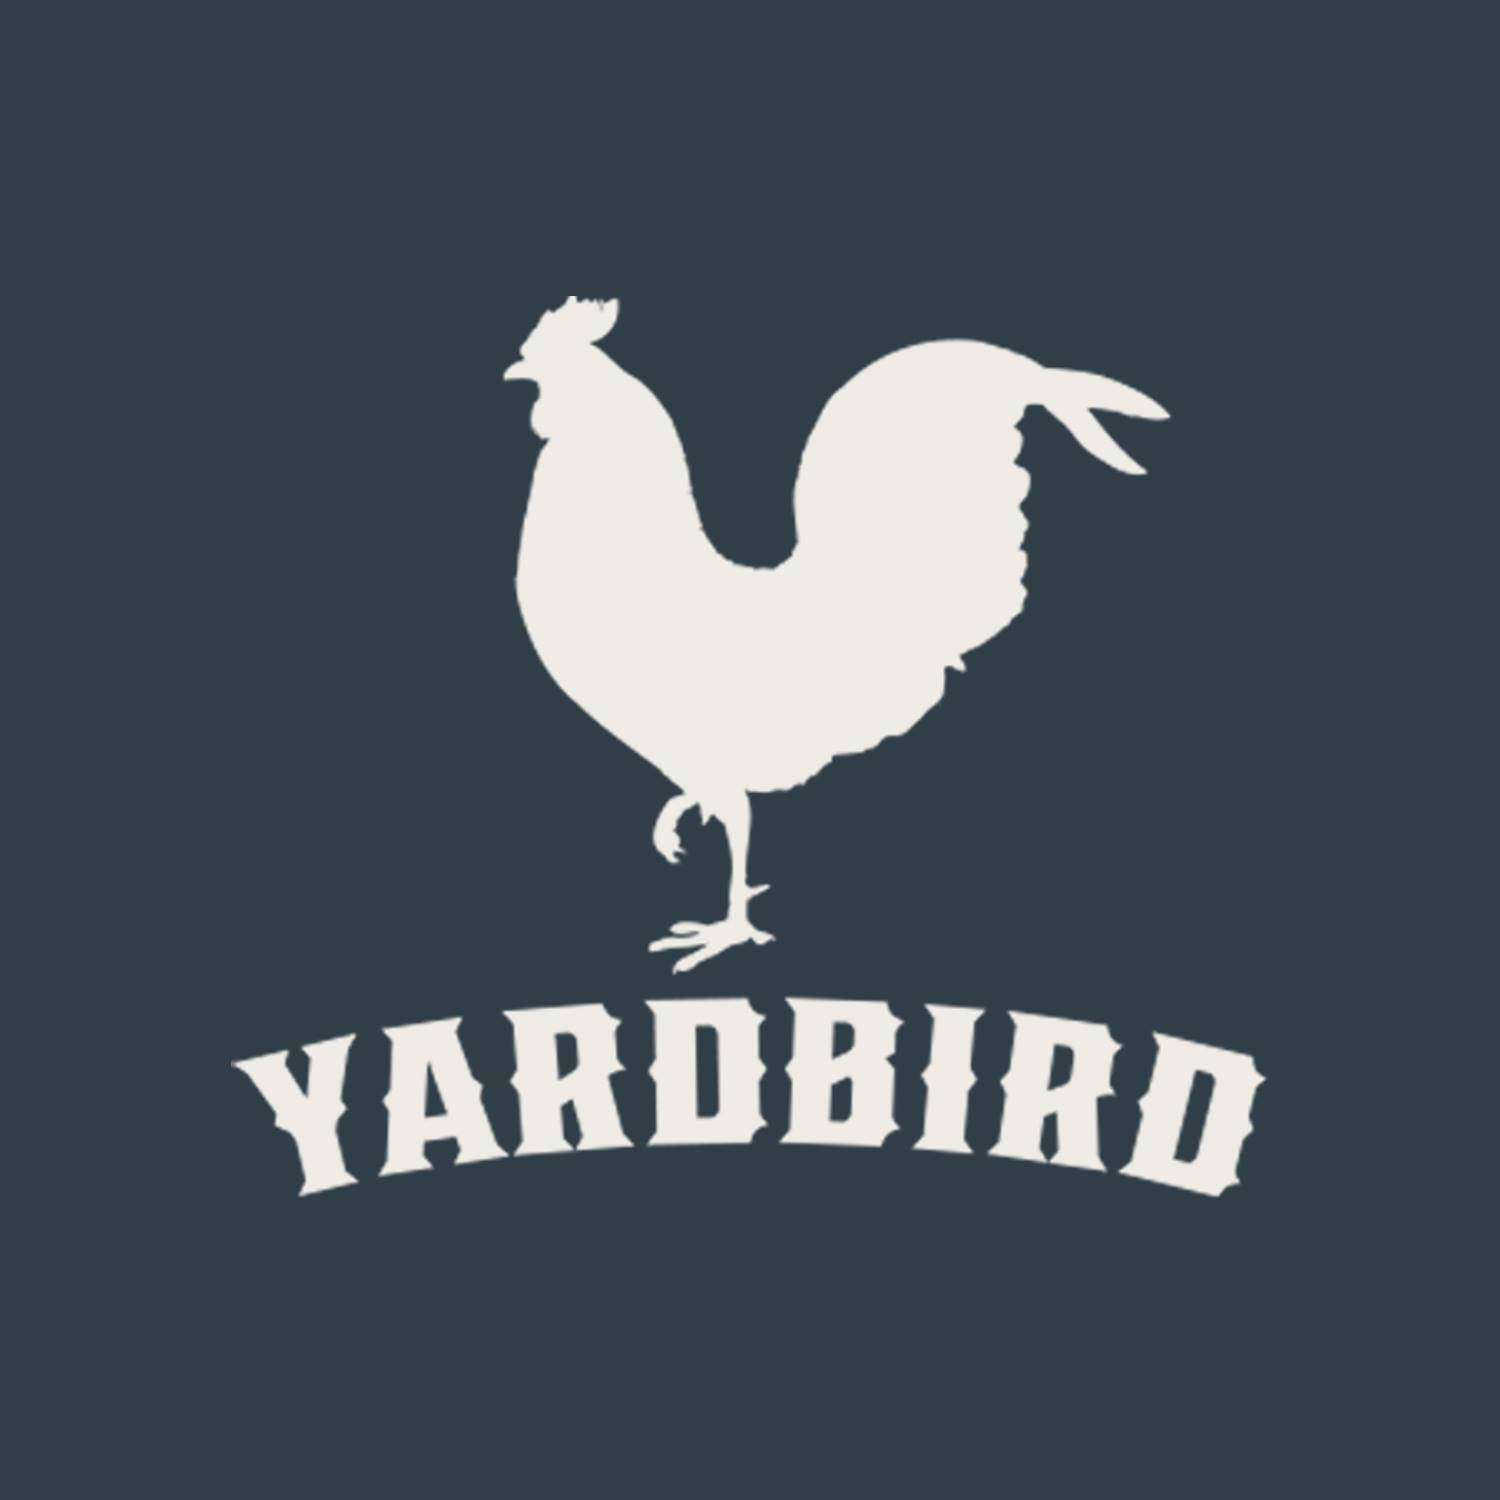 Yardbird Table & Bar